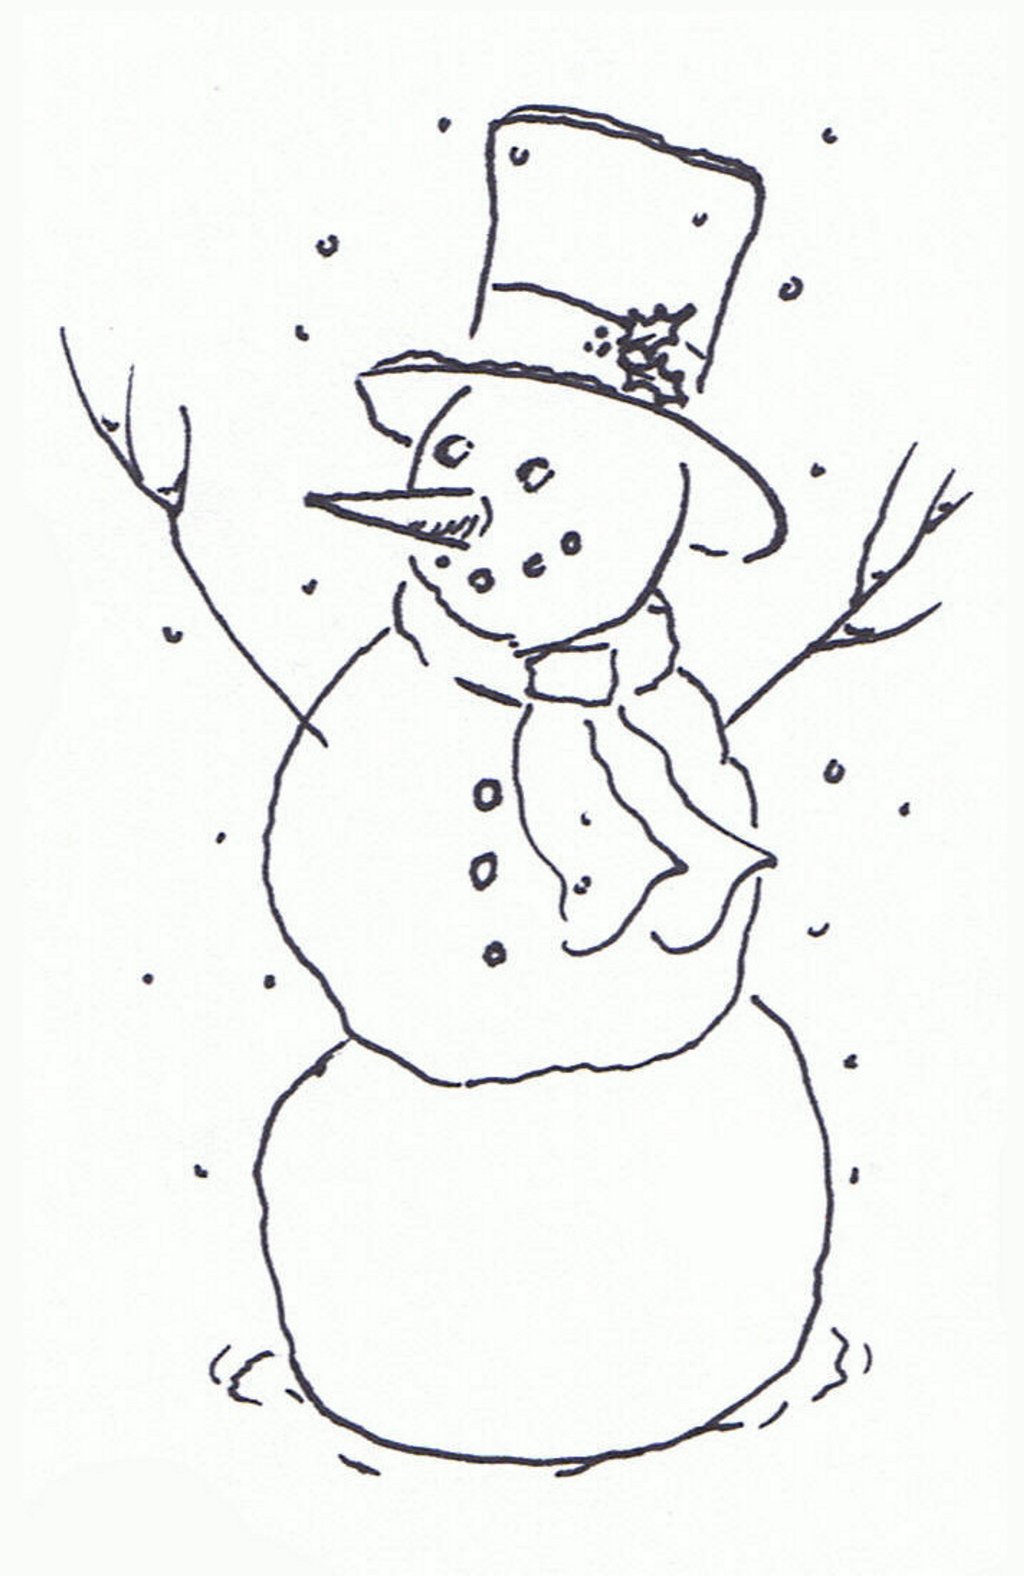 Snowman Clipart